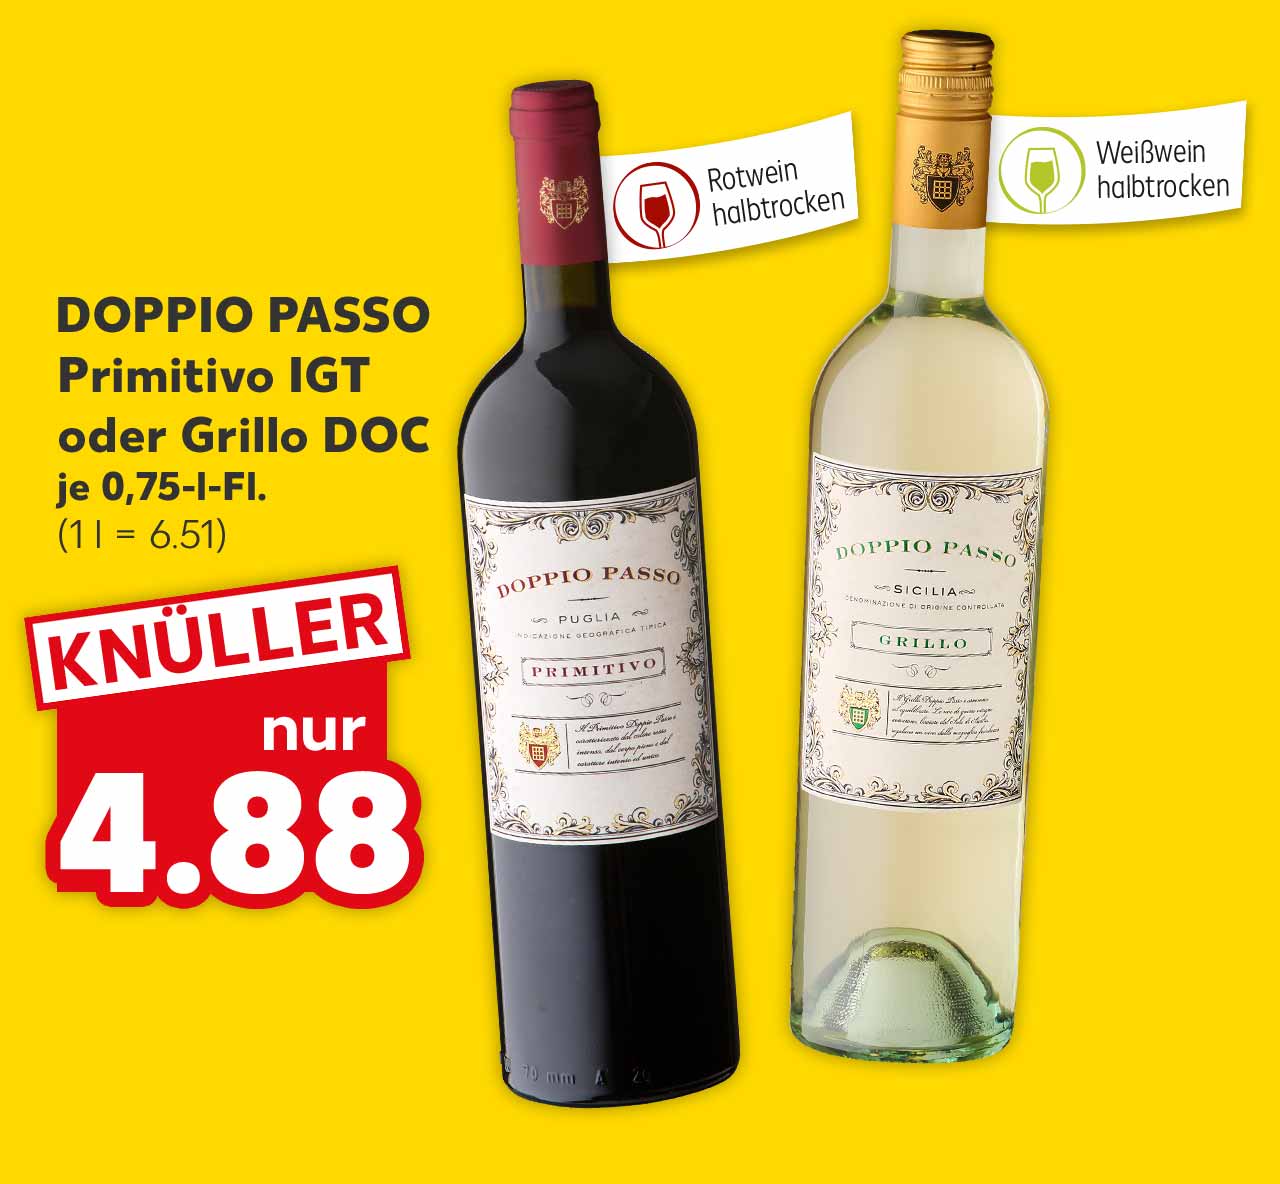 DOPPIO PASSO Primitivo IGT oder Grillo DOC, versch. Sorten, je 0.75-l-Fl. für 4.88 Euro (1 l = 6.51); Fähnchen an der jeweiligen Flasche: Rotwein halbtrocken, Weißwein halbtrocken